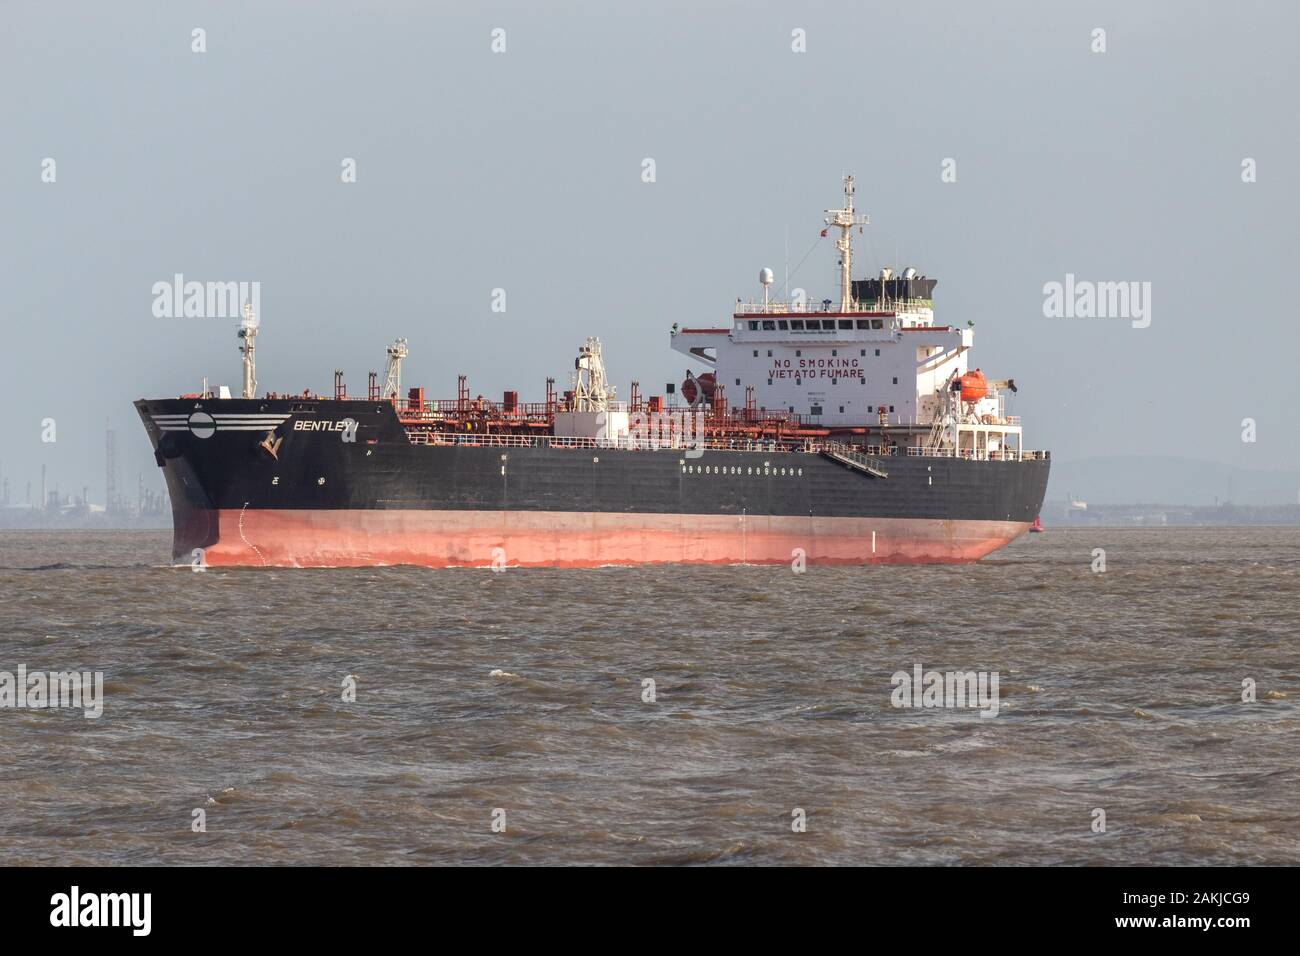 Bentley I oil tanker, River Mersey, Liverpool Stock Photo